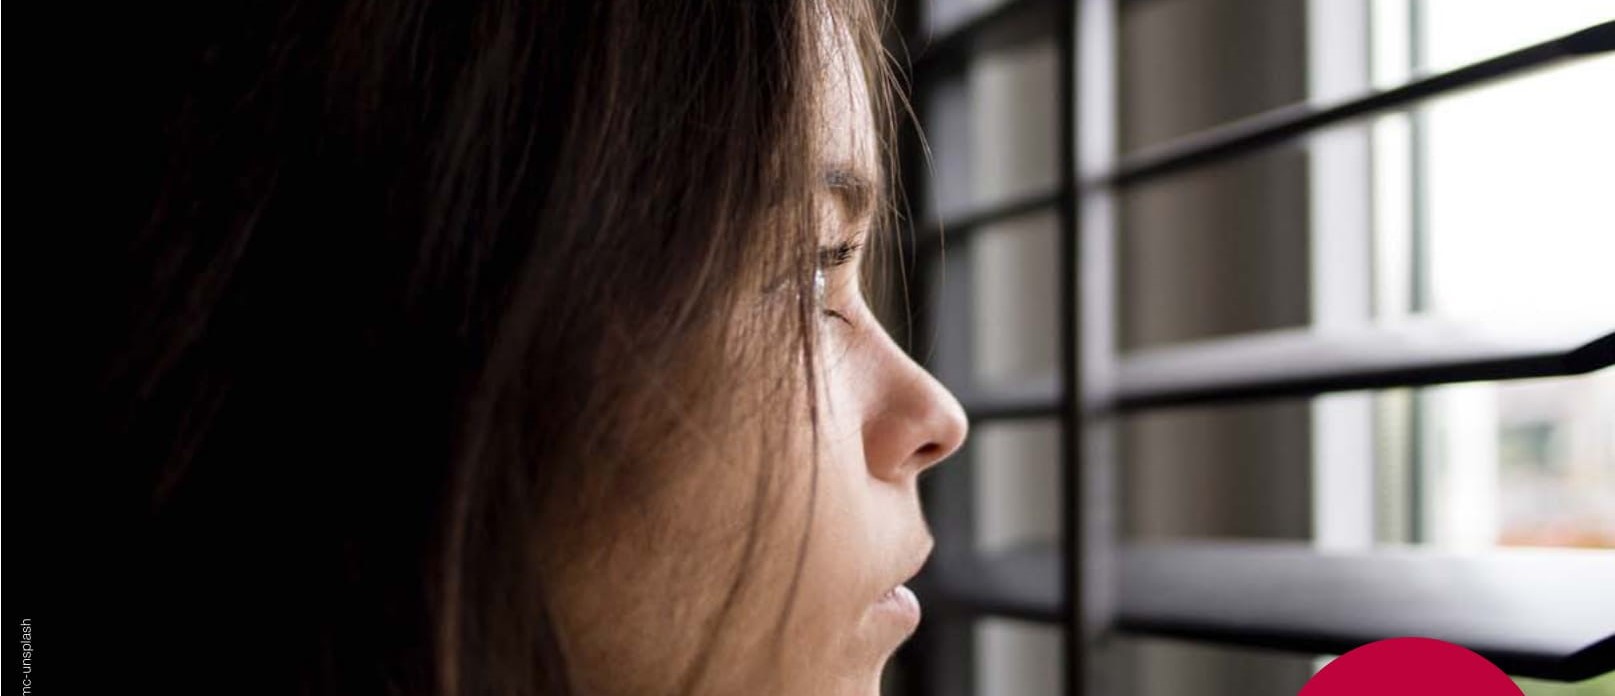 Menschenhandel: Kongress verschoben – die Not der Frauen nicht